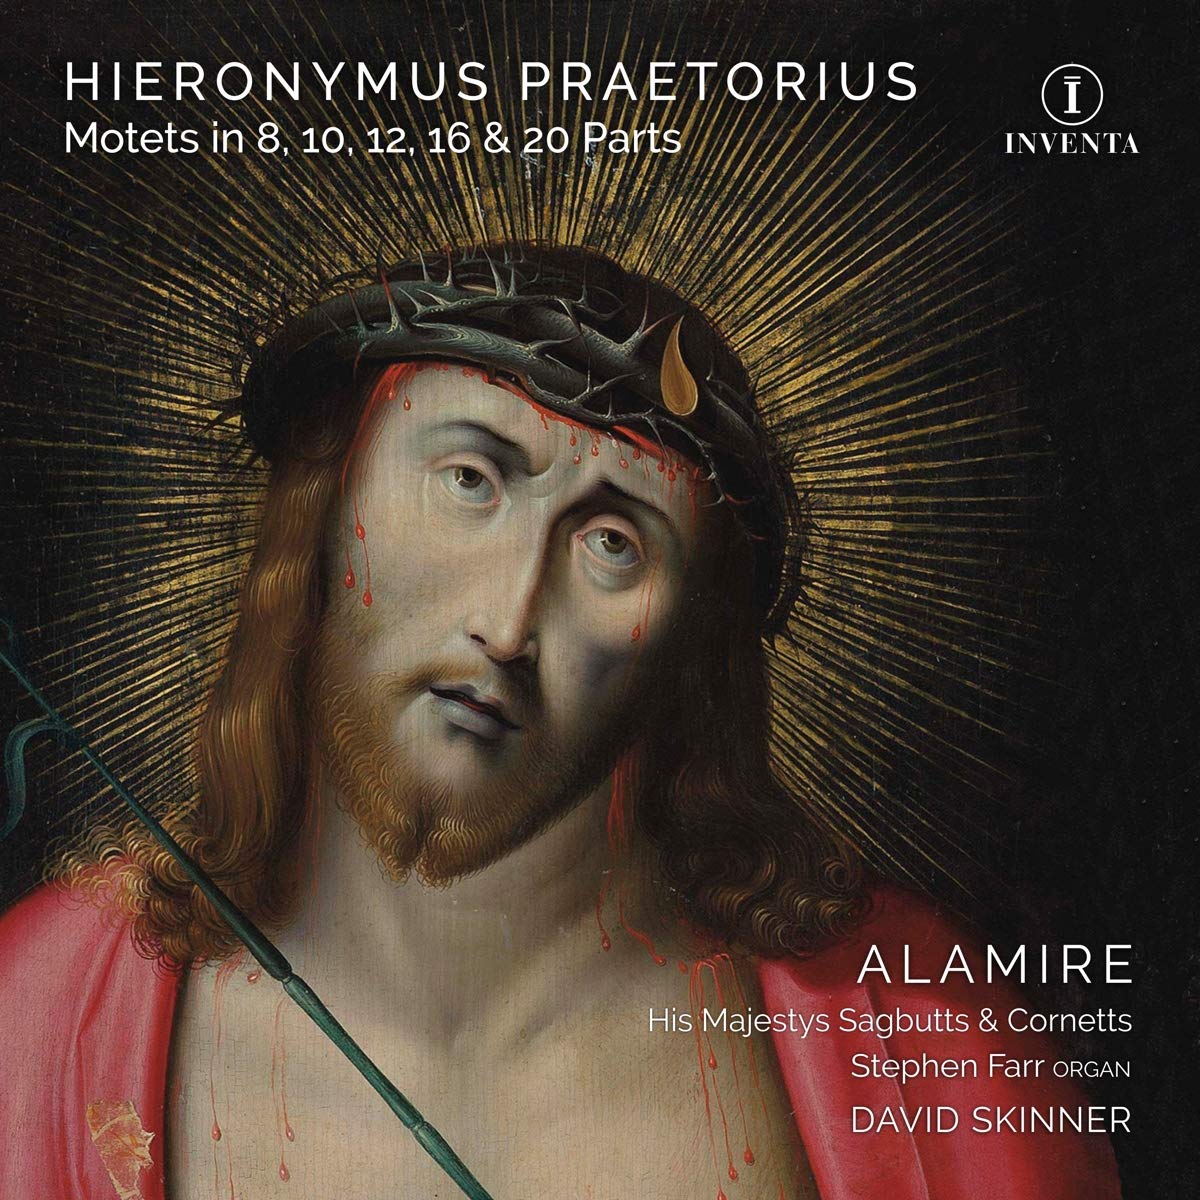 Audio Cd Hieronymus Praetorius - Motets In 8, 10, 12, 16 & 20 Parts (2 Cd) NUOVO SIGILLATO, EDIZIONE DEL 24/04/2019 SUBITO DISPONIBILE